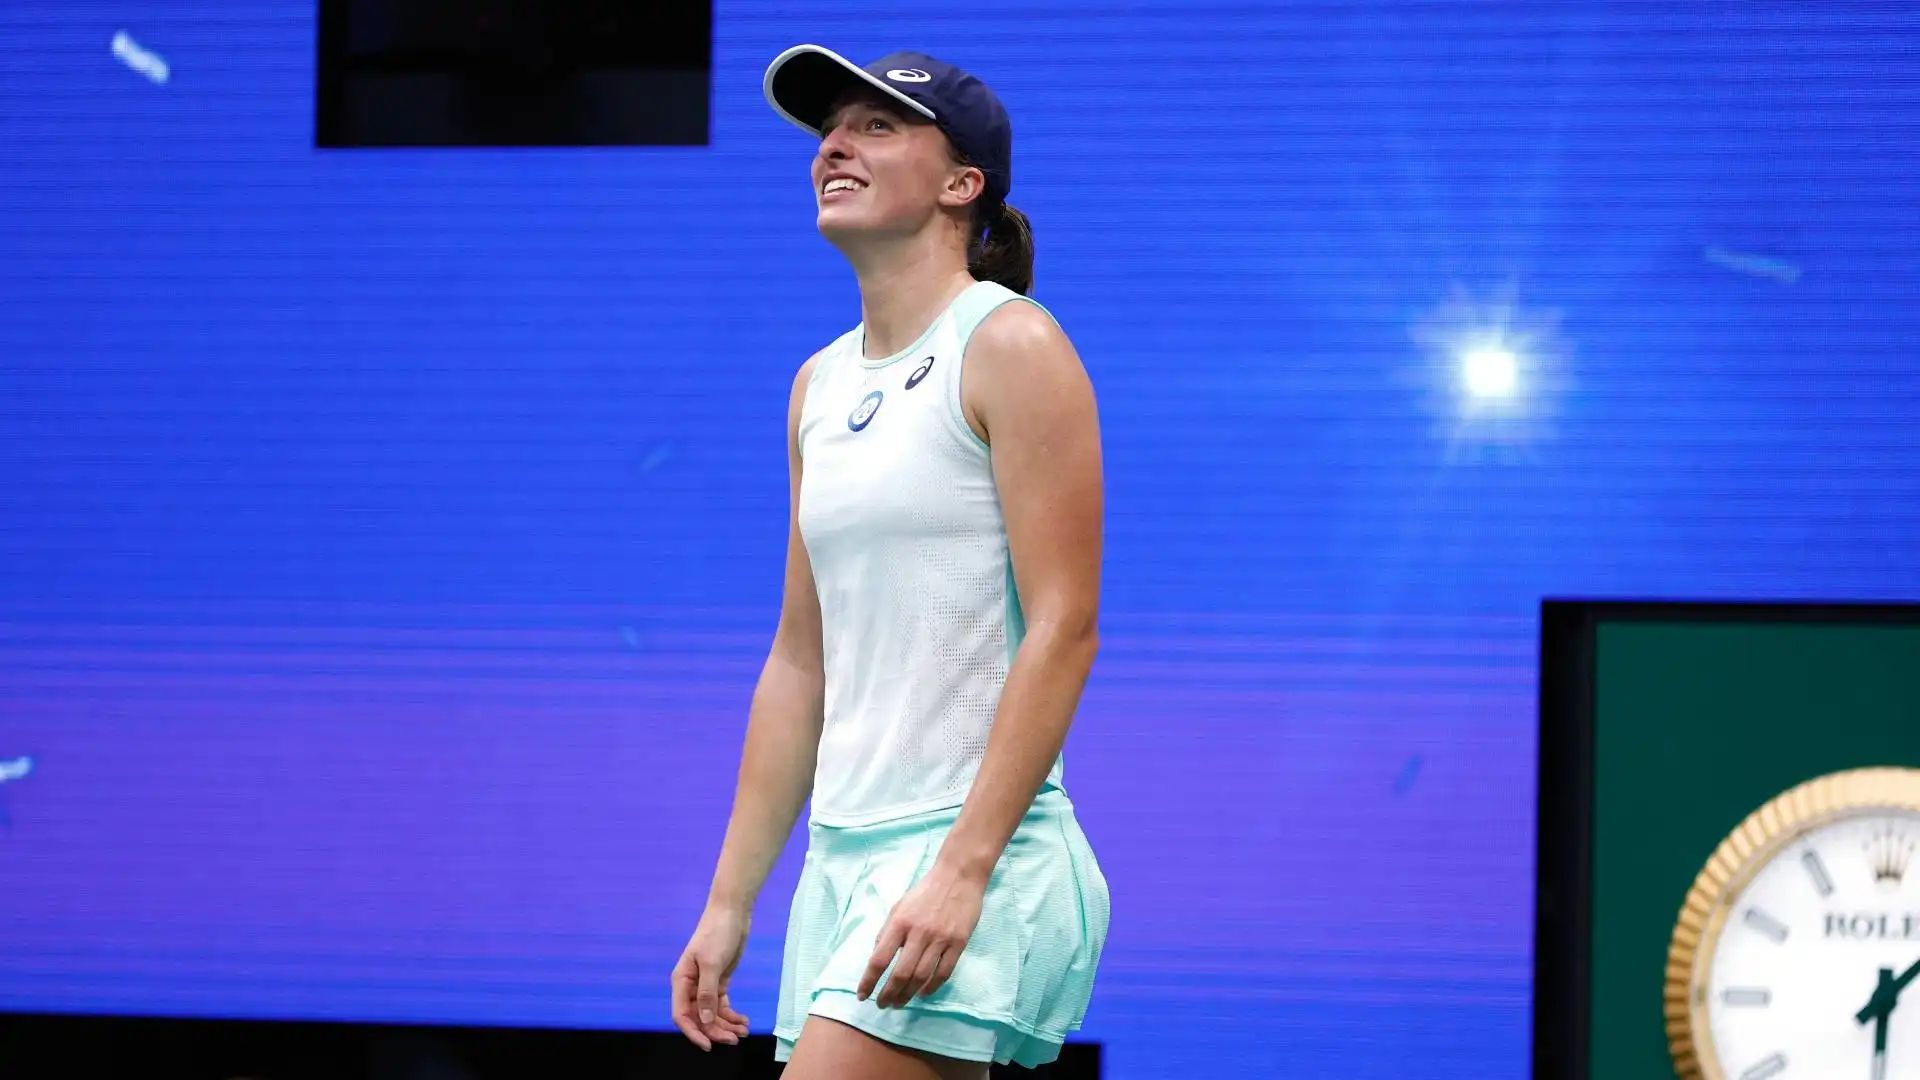 Nel 2020, riprende a giocare ripartendo dagli Australian Open ma viene eliminata negli ottavi di finale da Anett Kontaveit portando, a fine torneo, il ranking alla 48ª posizione mondiale